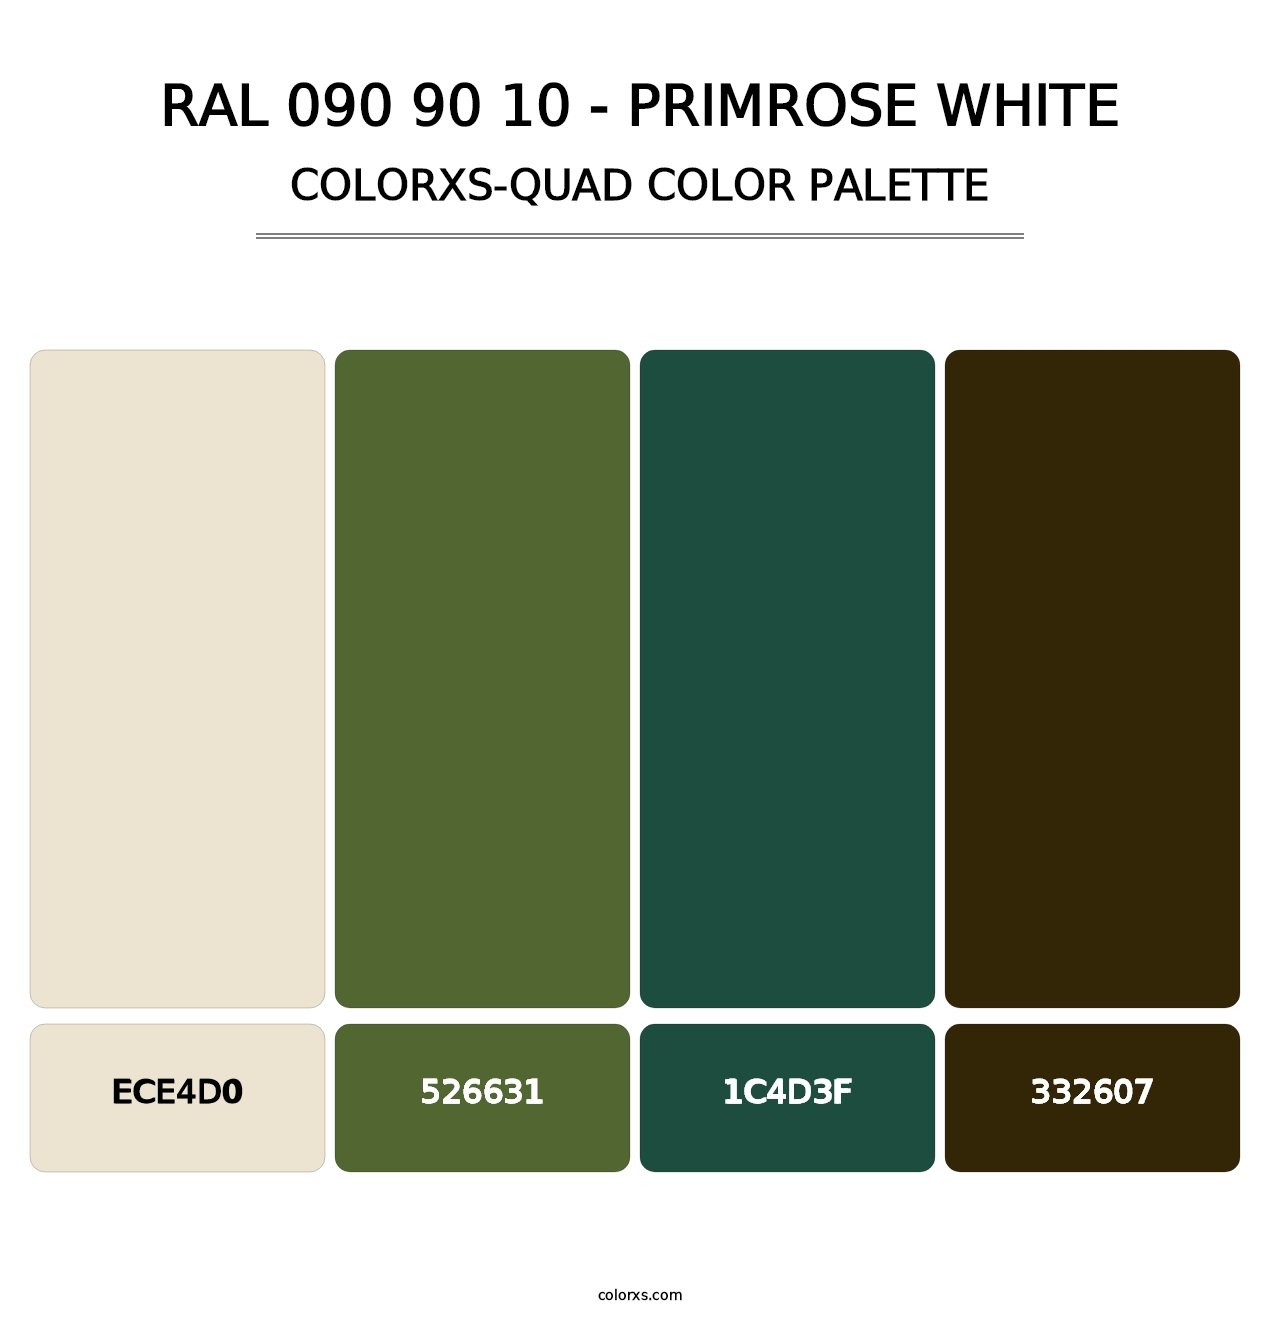 RAL 090 90 10 - Primrose White - Colorxs Quad Palette